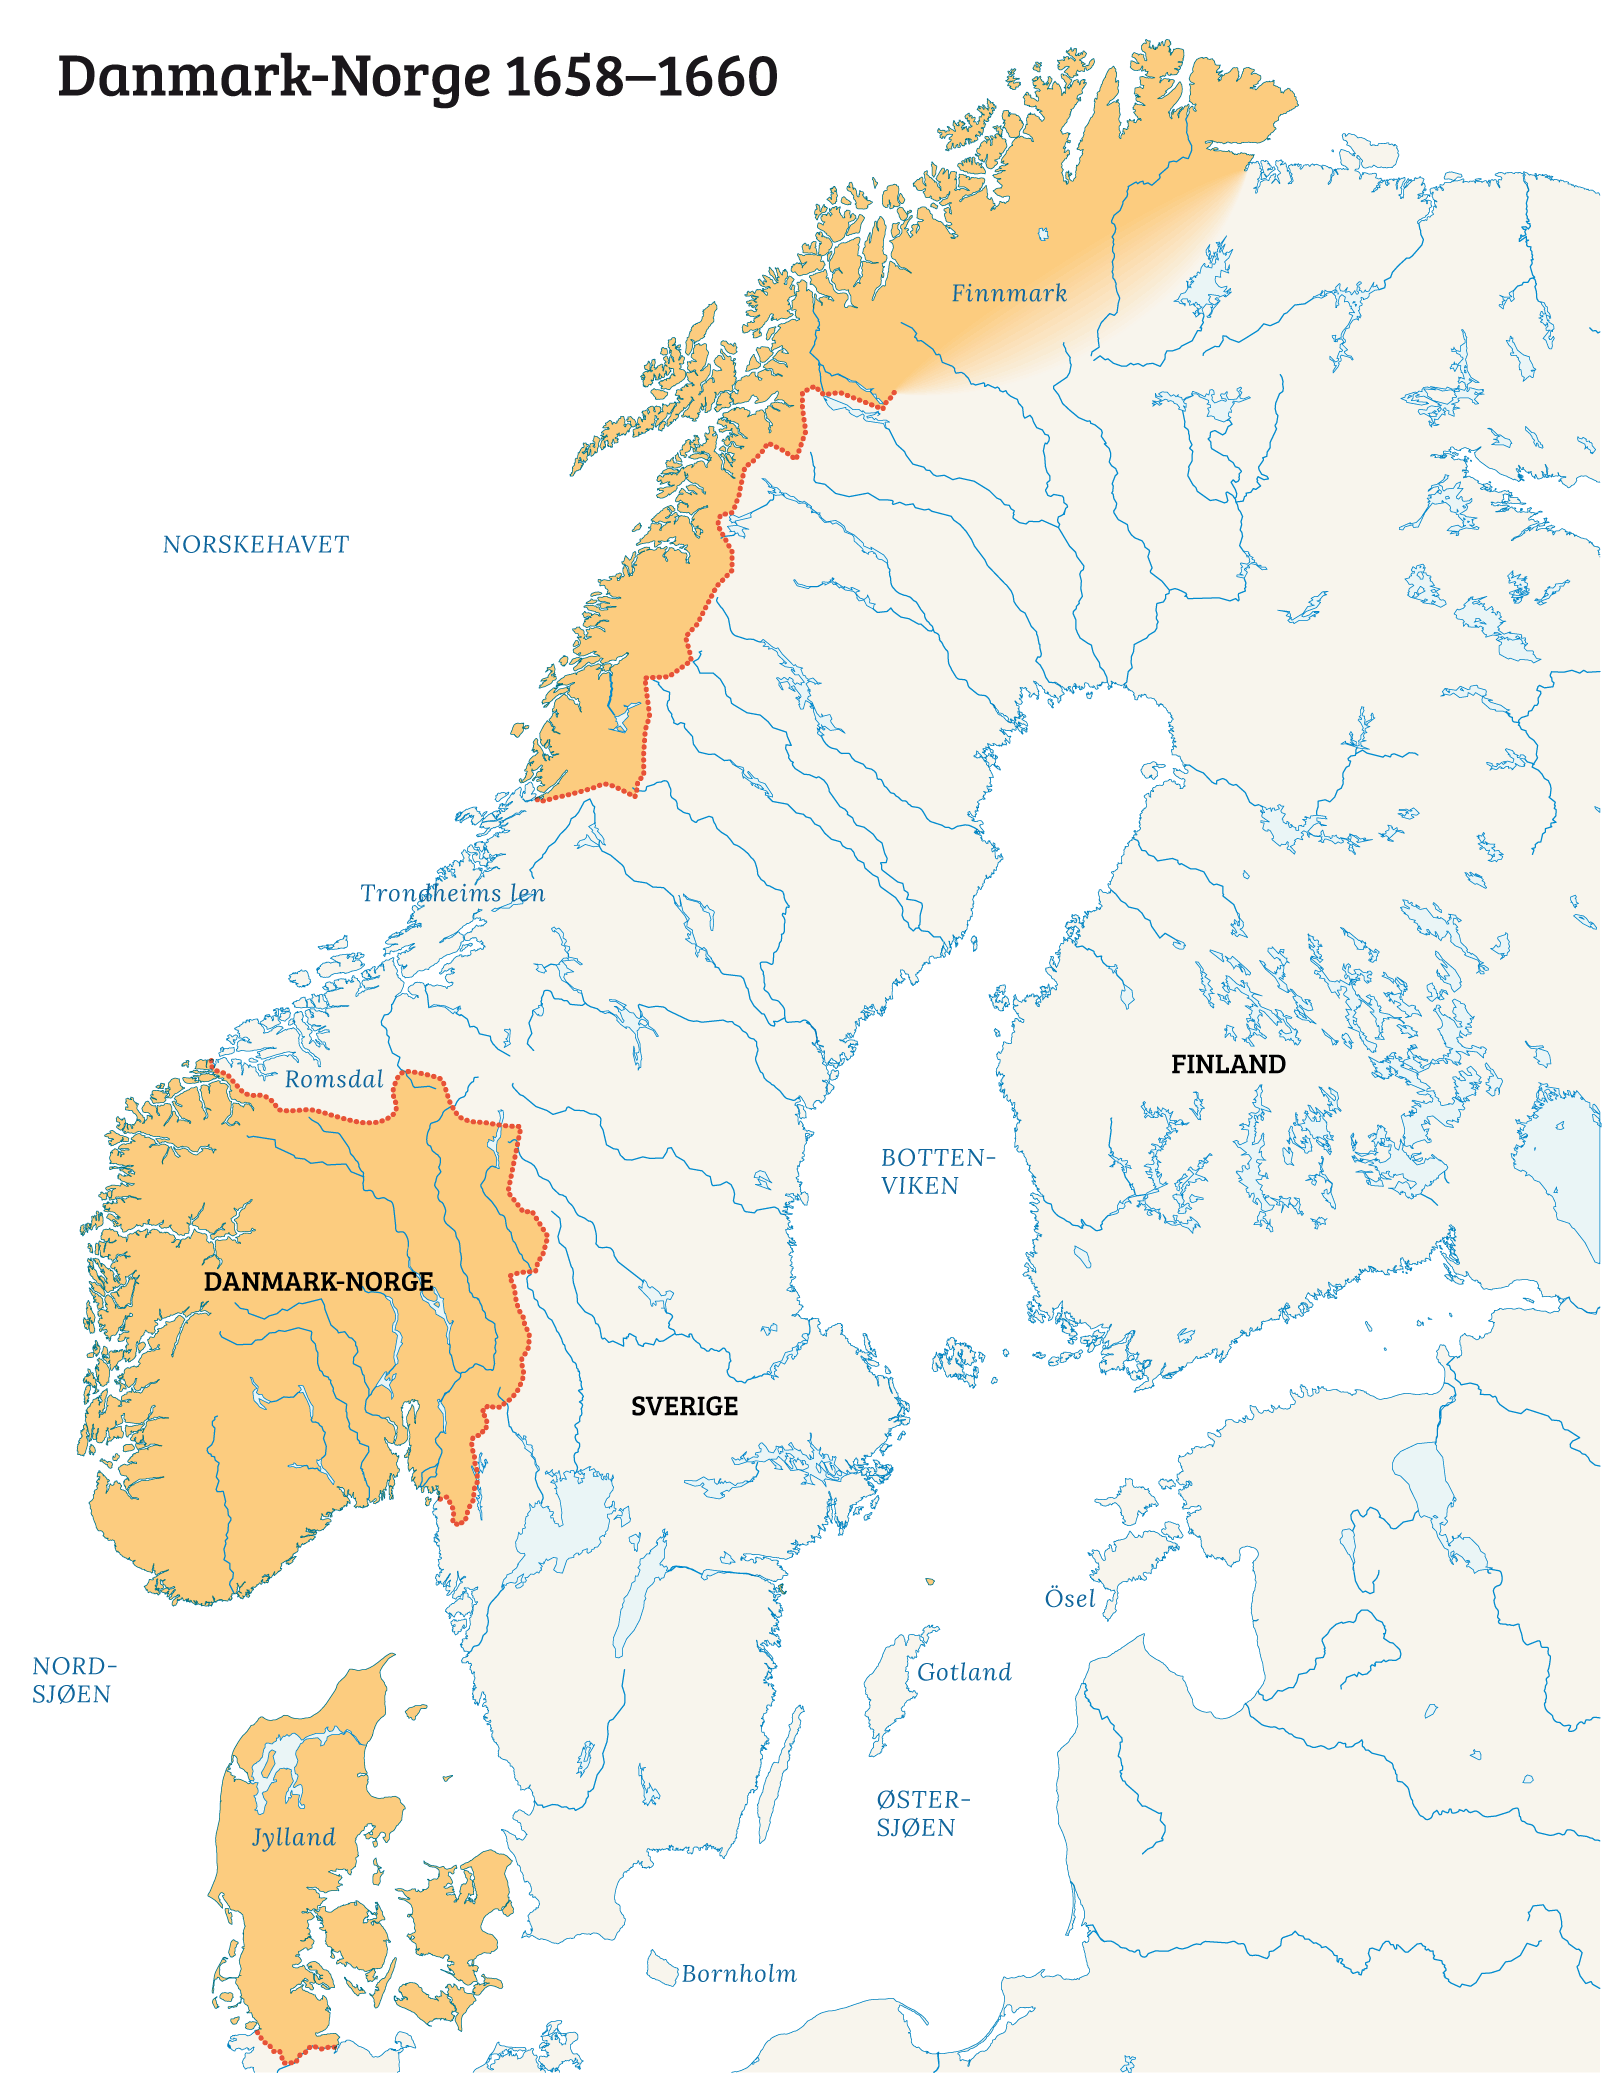 Kart som viser Danmark-Norge mellom 1658–1660: Trondhjems len og Romsdal er nå svensk, og den svenske delen av den skandinaviske halvøya erobret.